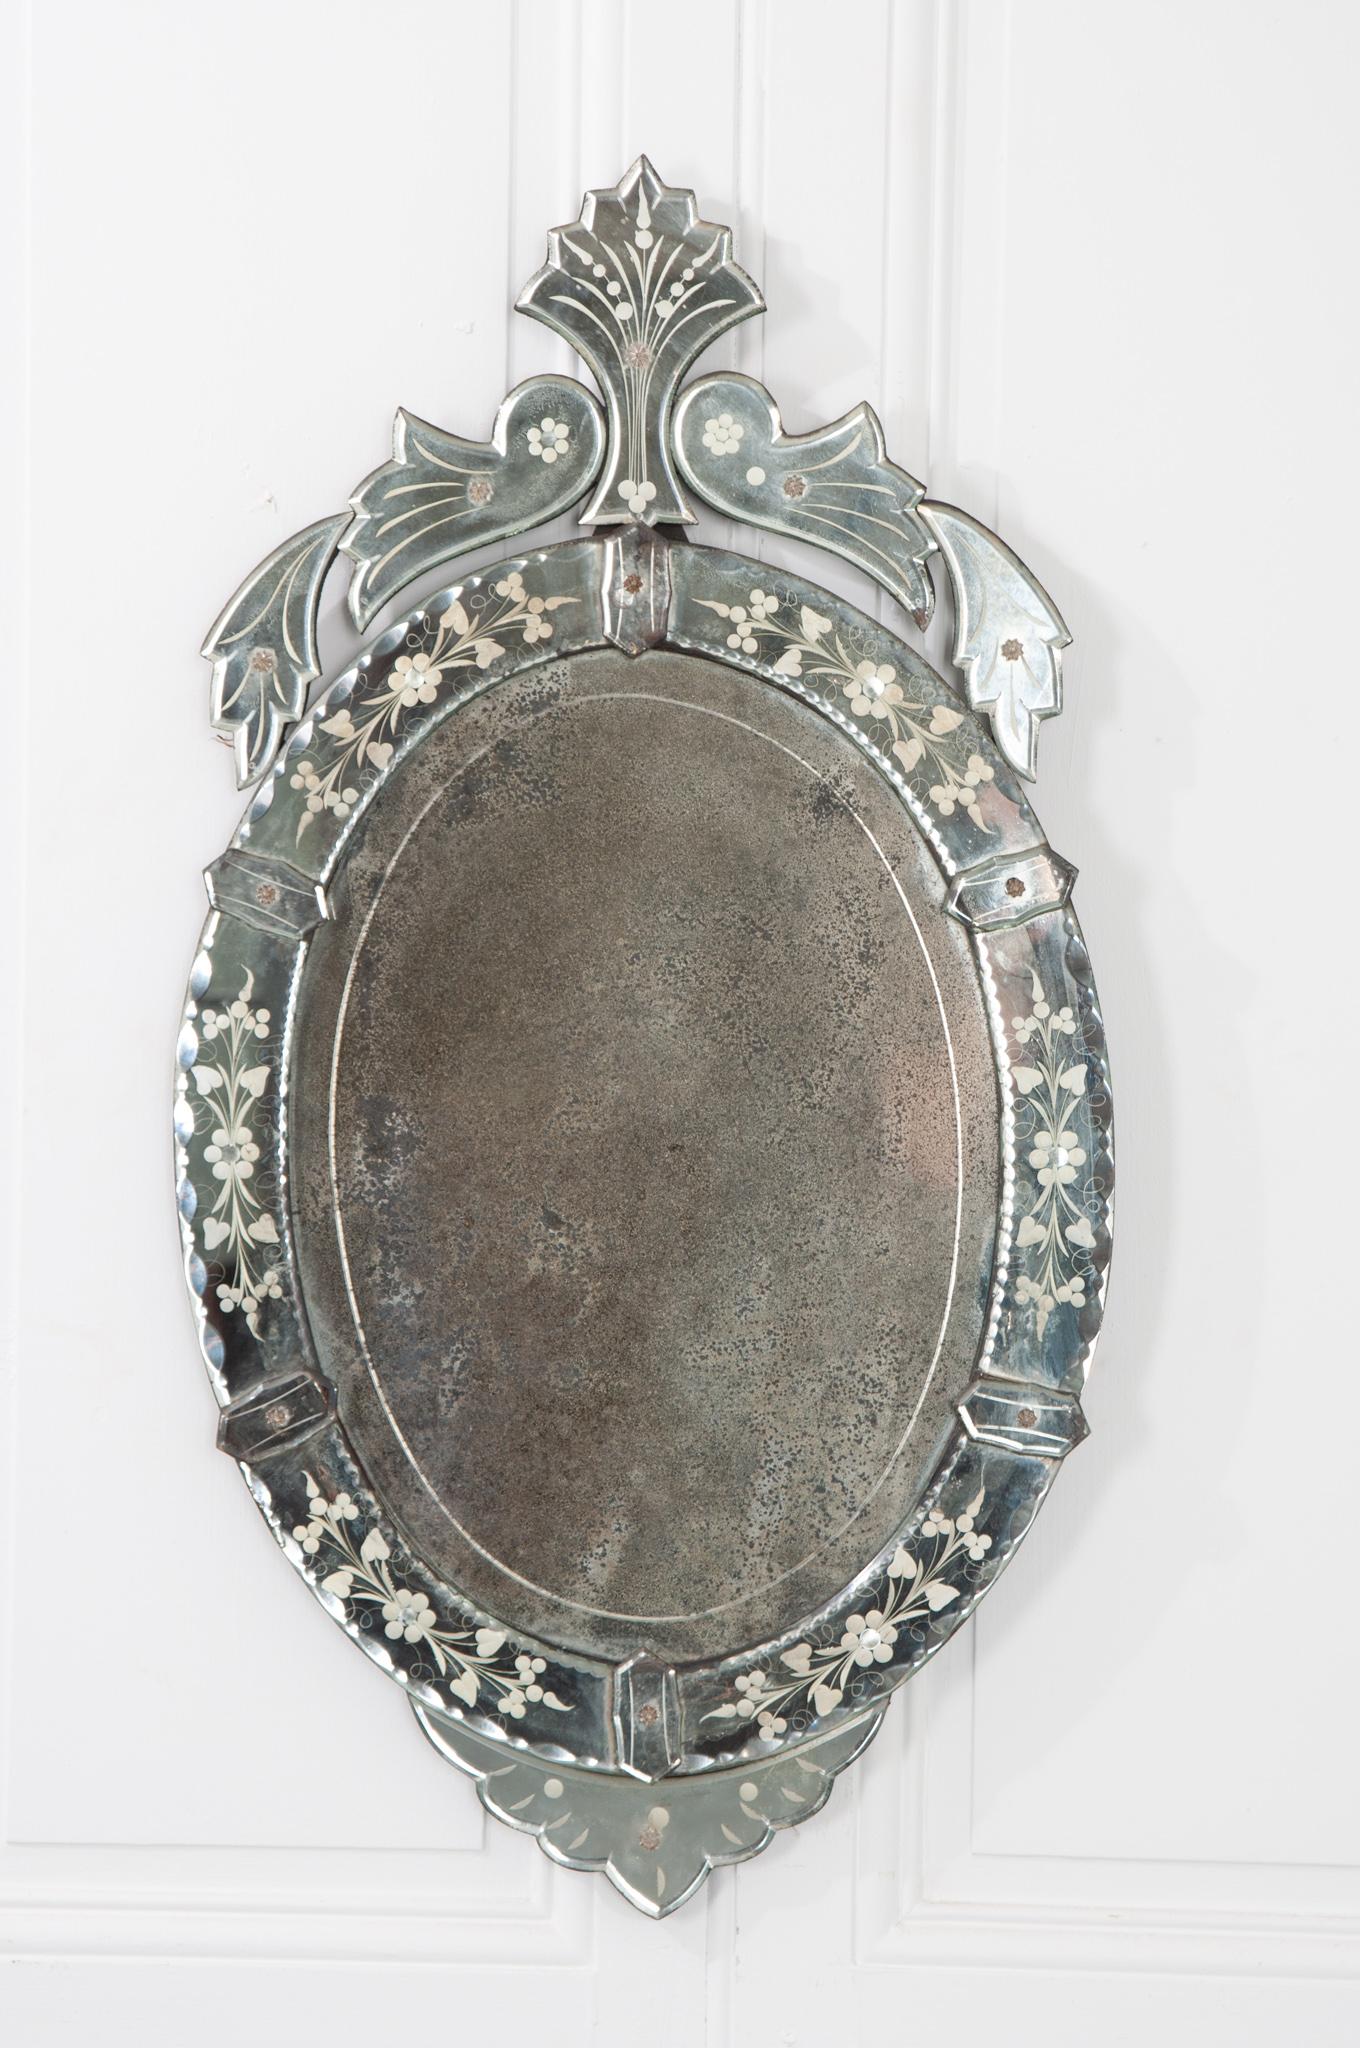 Il s'agit d'un joli miroir ovale vénitien provenant d'Italie. La plaque d'origine présente de nombreuses rousseurs et un certain vieillissement. Il ajouterait sans aucun doute de l'élégance à l'ancienne à n'importe quel espace. Ne manquez pas de